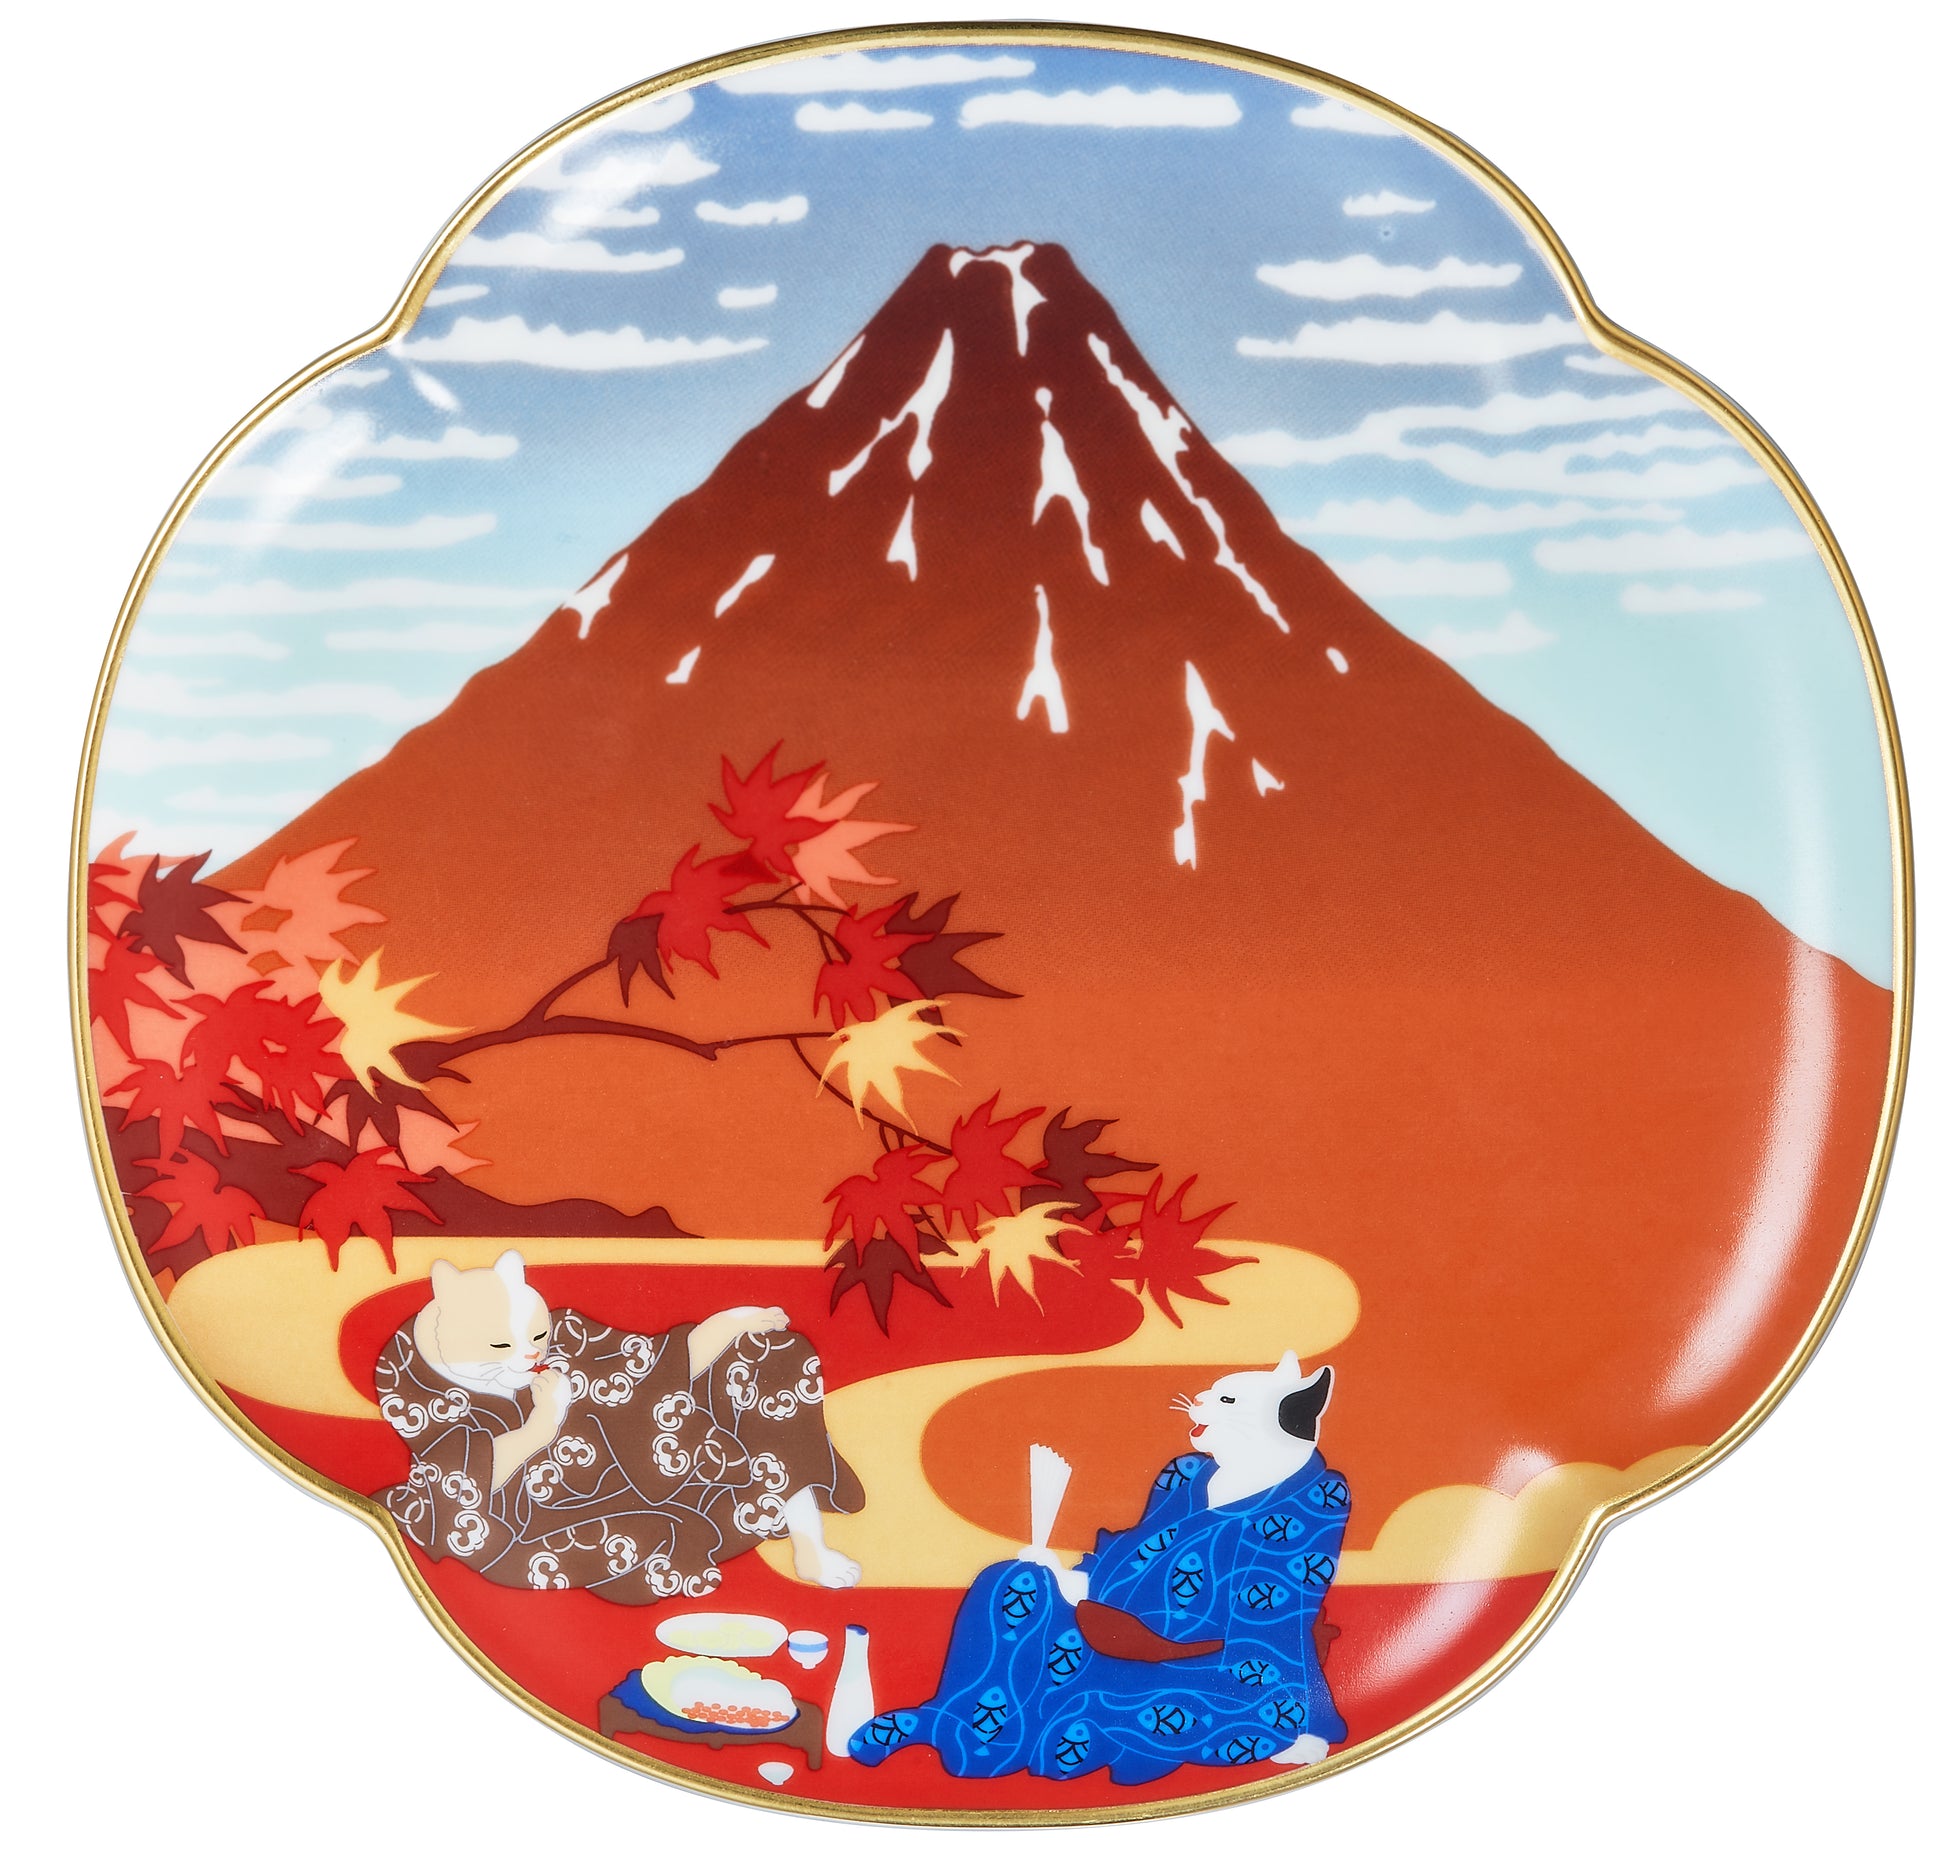 Fine Wind, Quiet Clouds Mug/Plate - Ukiyo-e Inspired Art | Ceramicraze